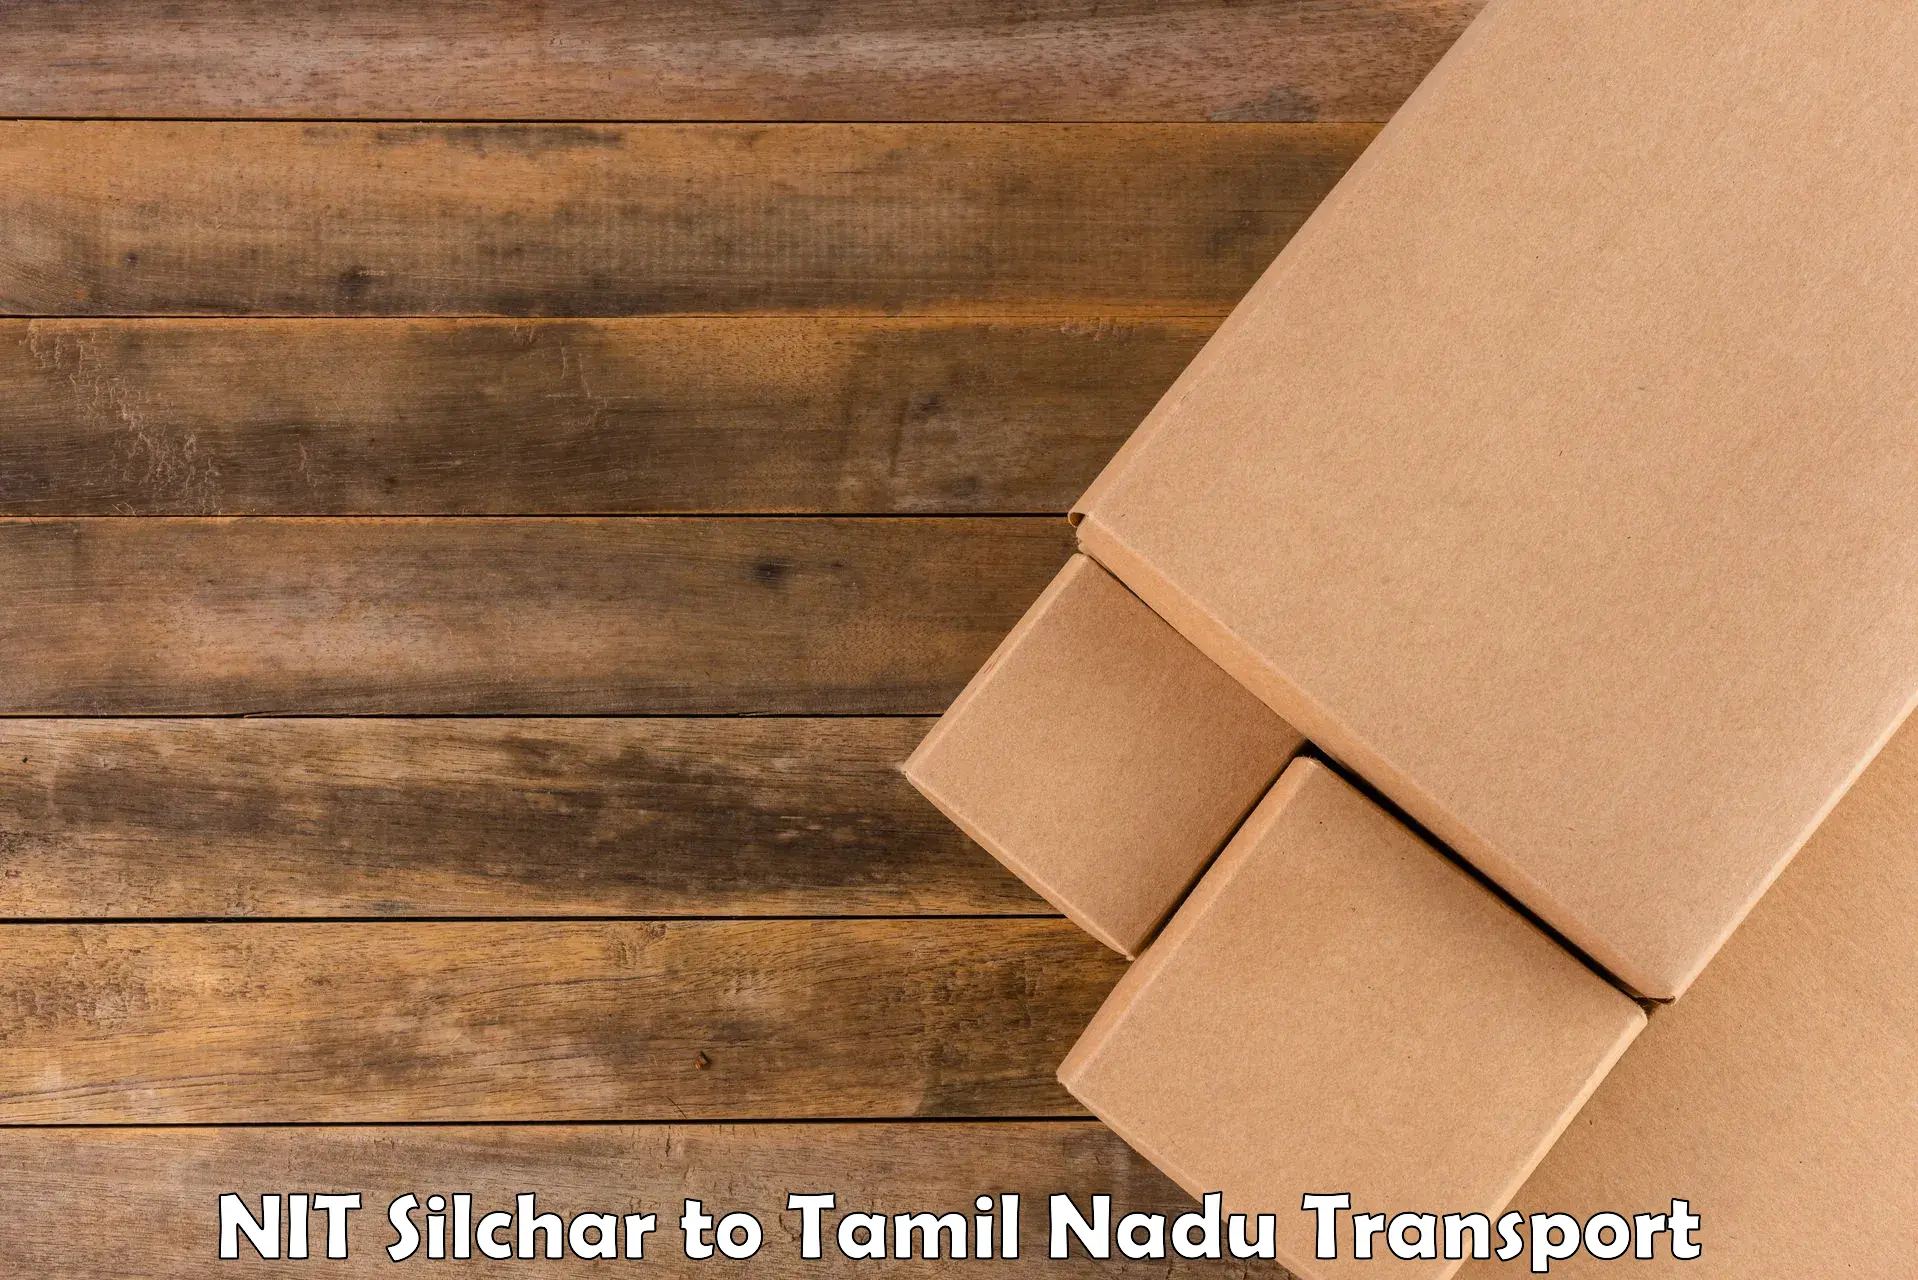 Container transport service NIT Silchar to Tiruchendur